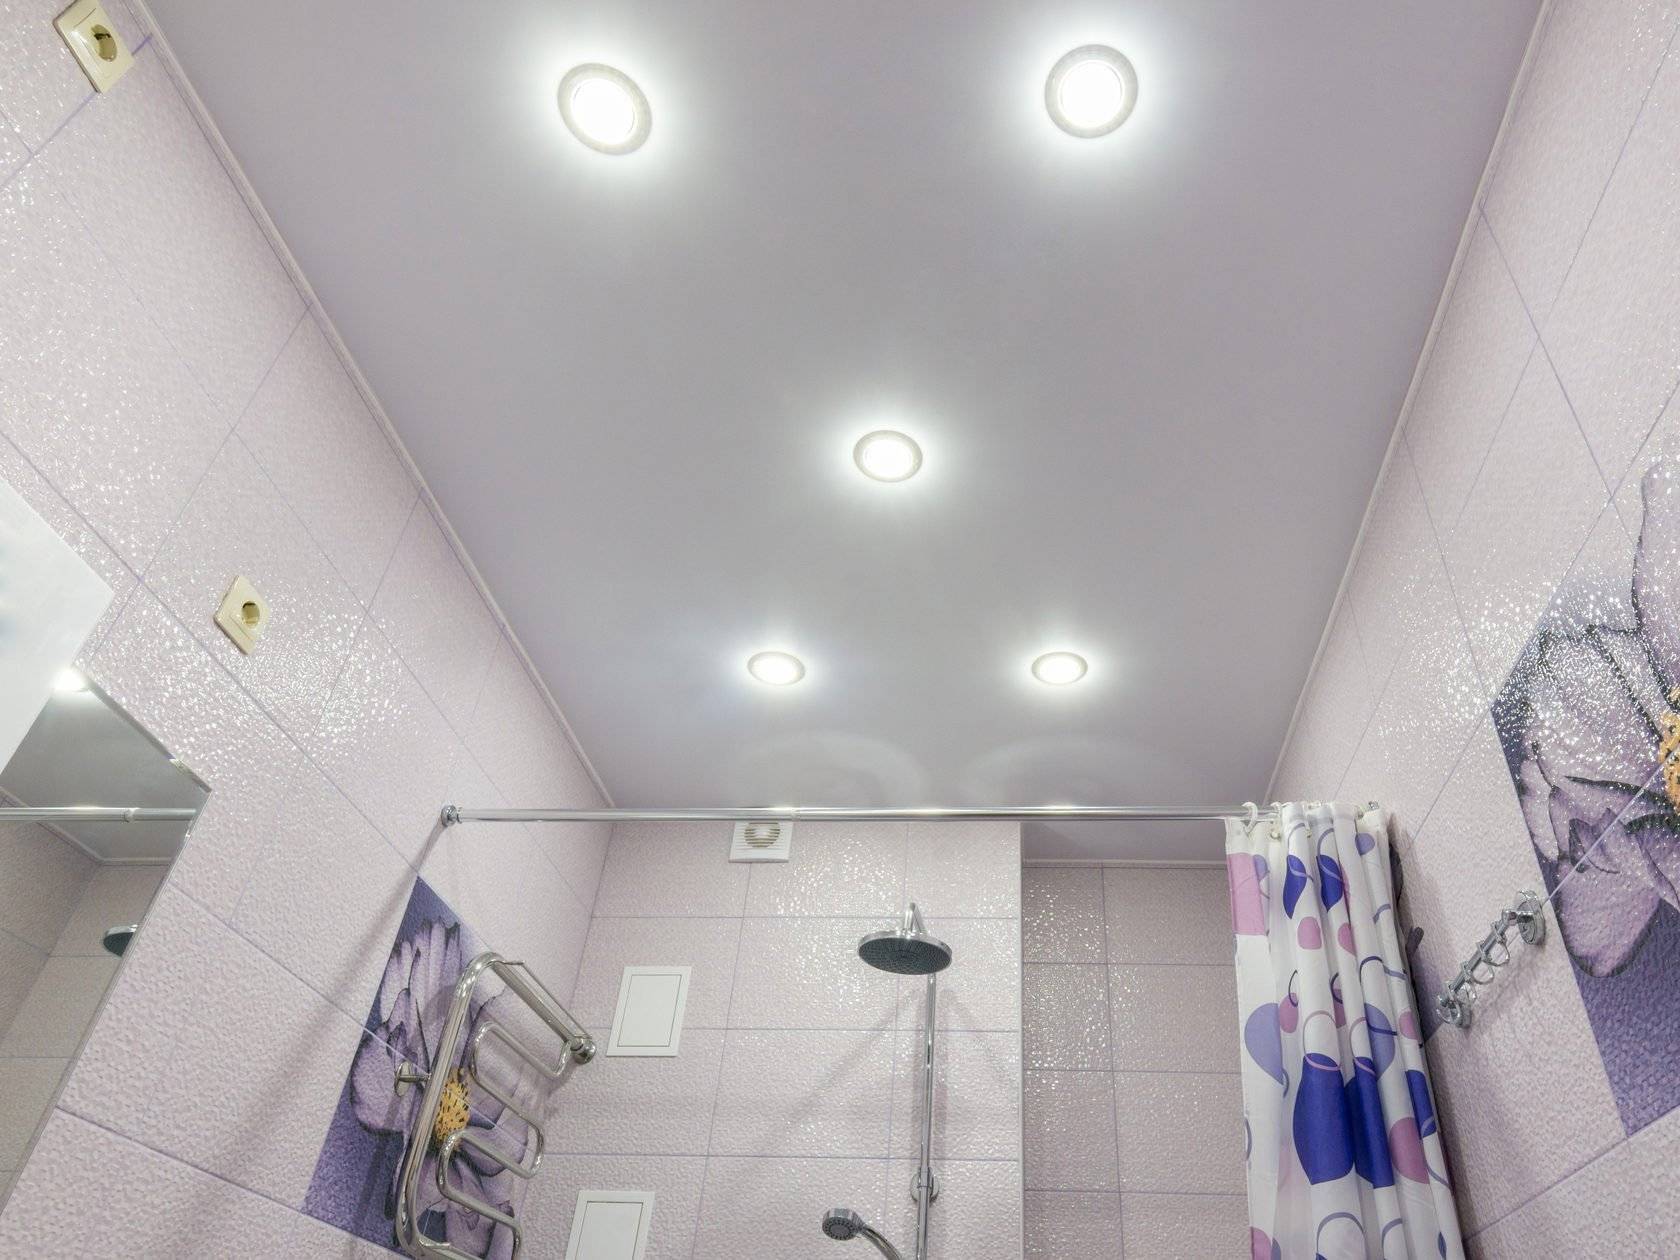 Делают ли в ванне натяжной потолок. Освещение в ванной точечными светильниками. Потолок в ванной с точечными светильниками. Точечные светильники в ванной. Точечные светильники в ванную комнату на потолок.